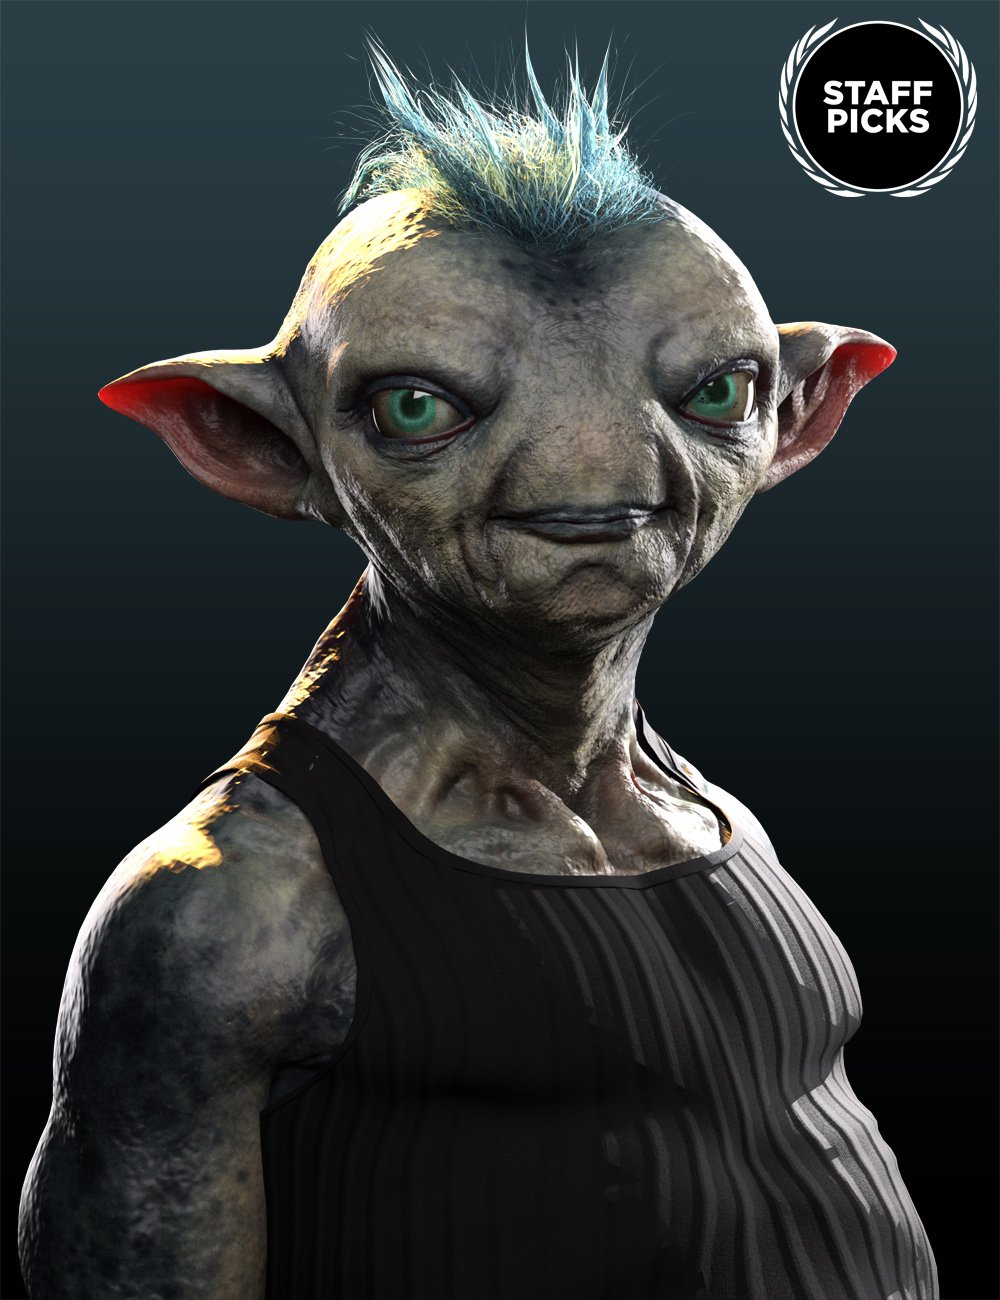 Mervin the Alien HD for Genesis 8 Male by: Josh Crockett, 3D Models by Daz 3D